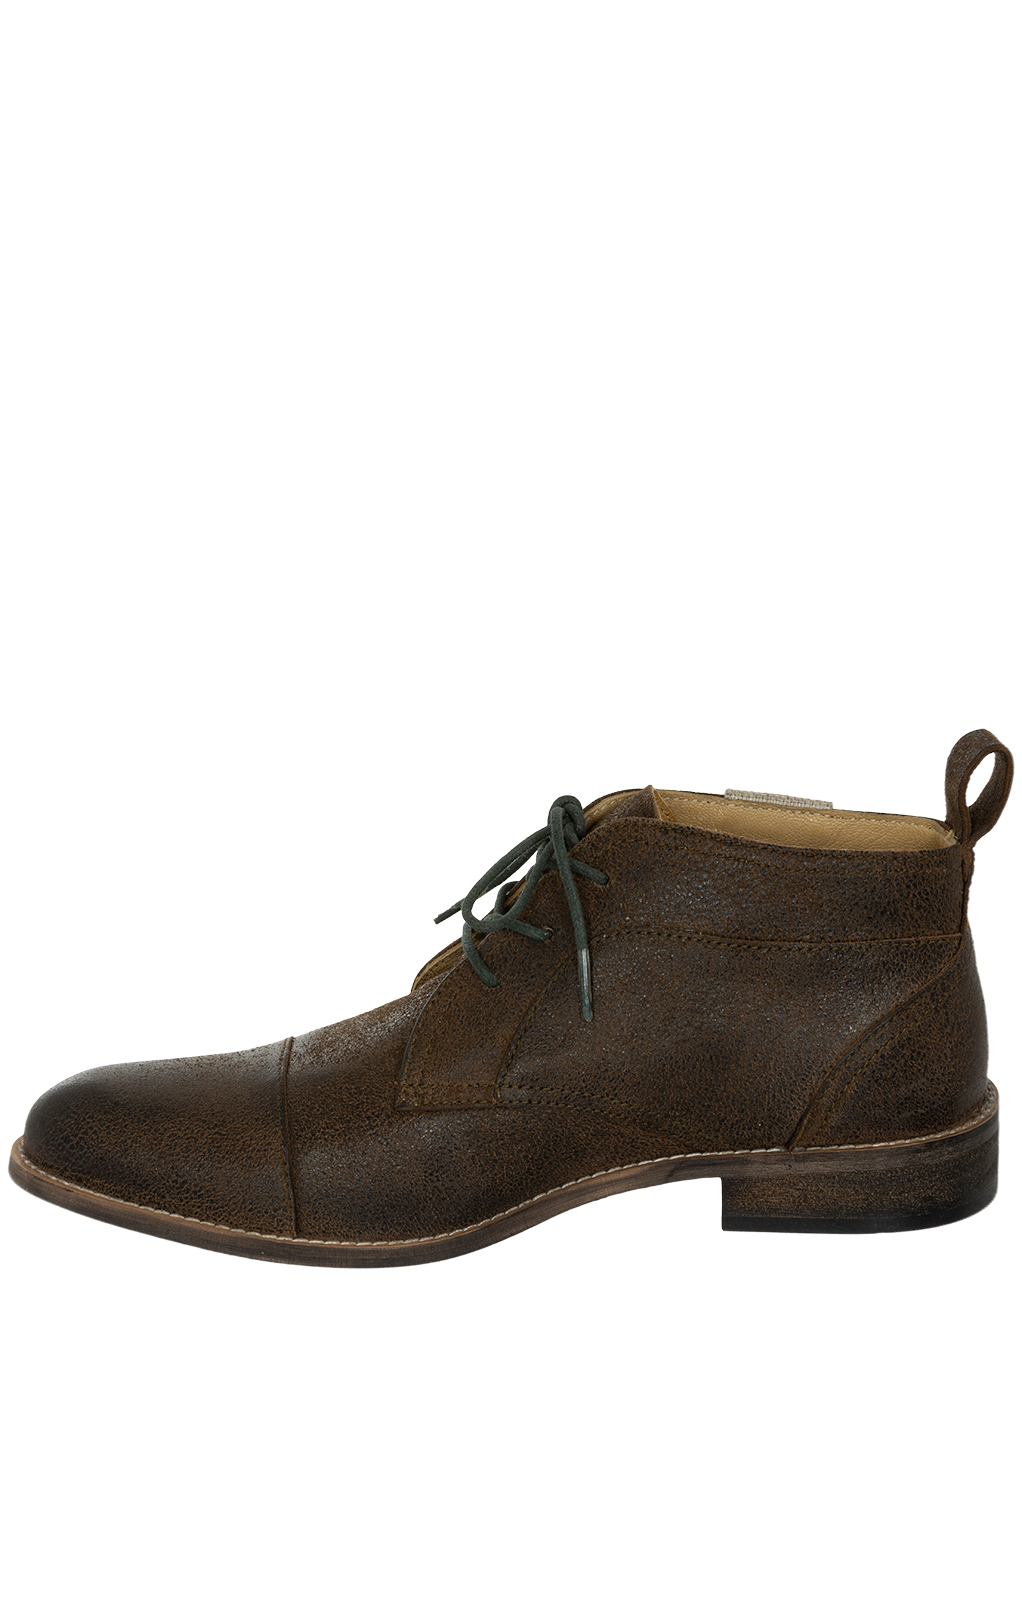 weitere Bilder von German traditional boots H531 JOCK brown